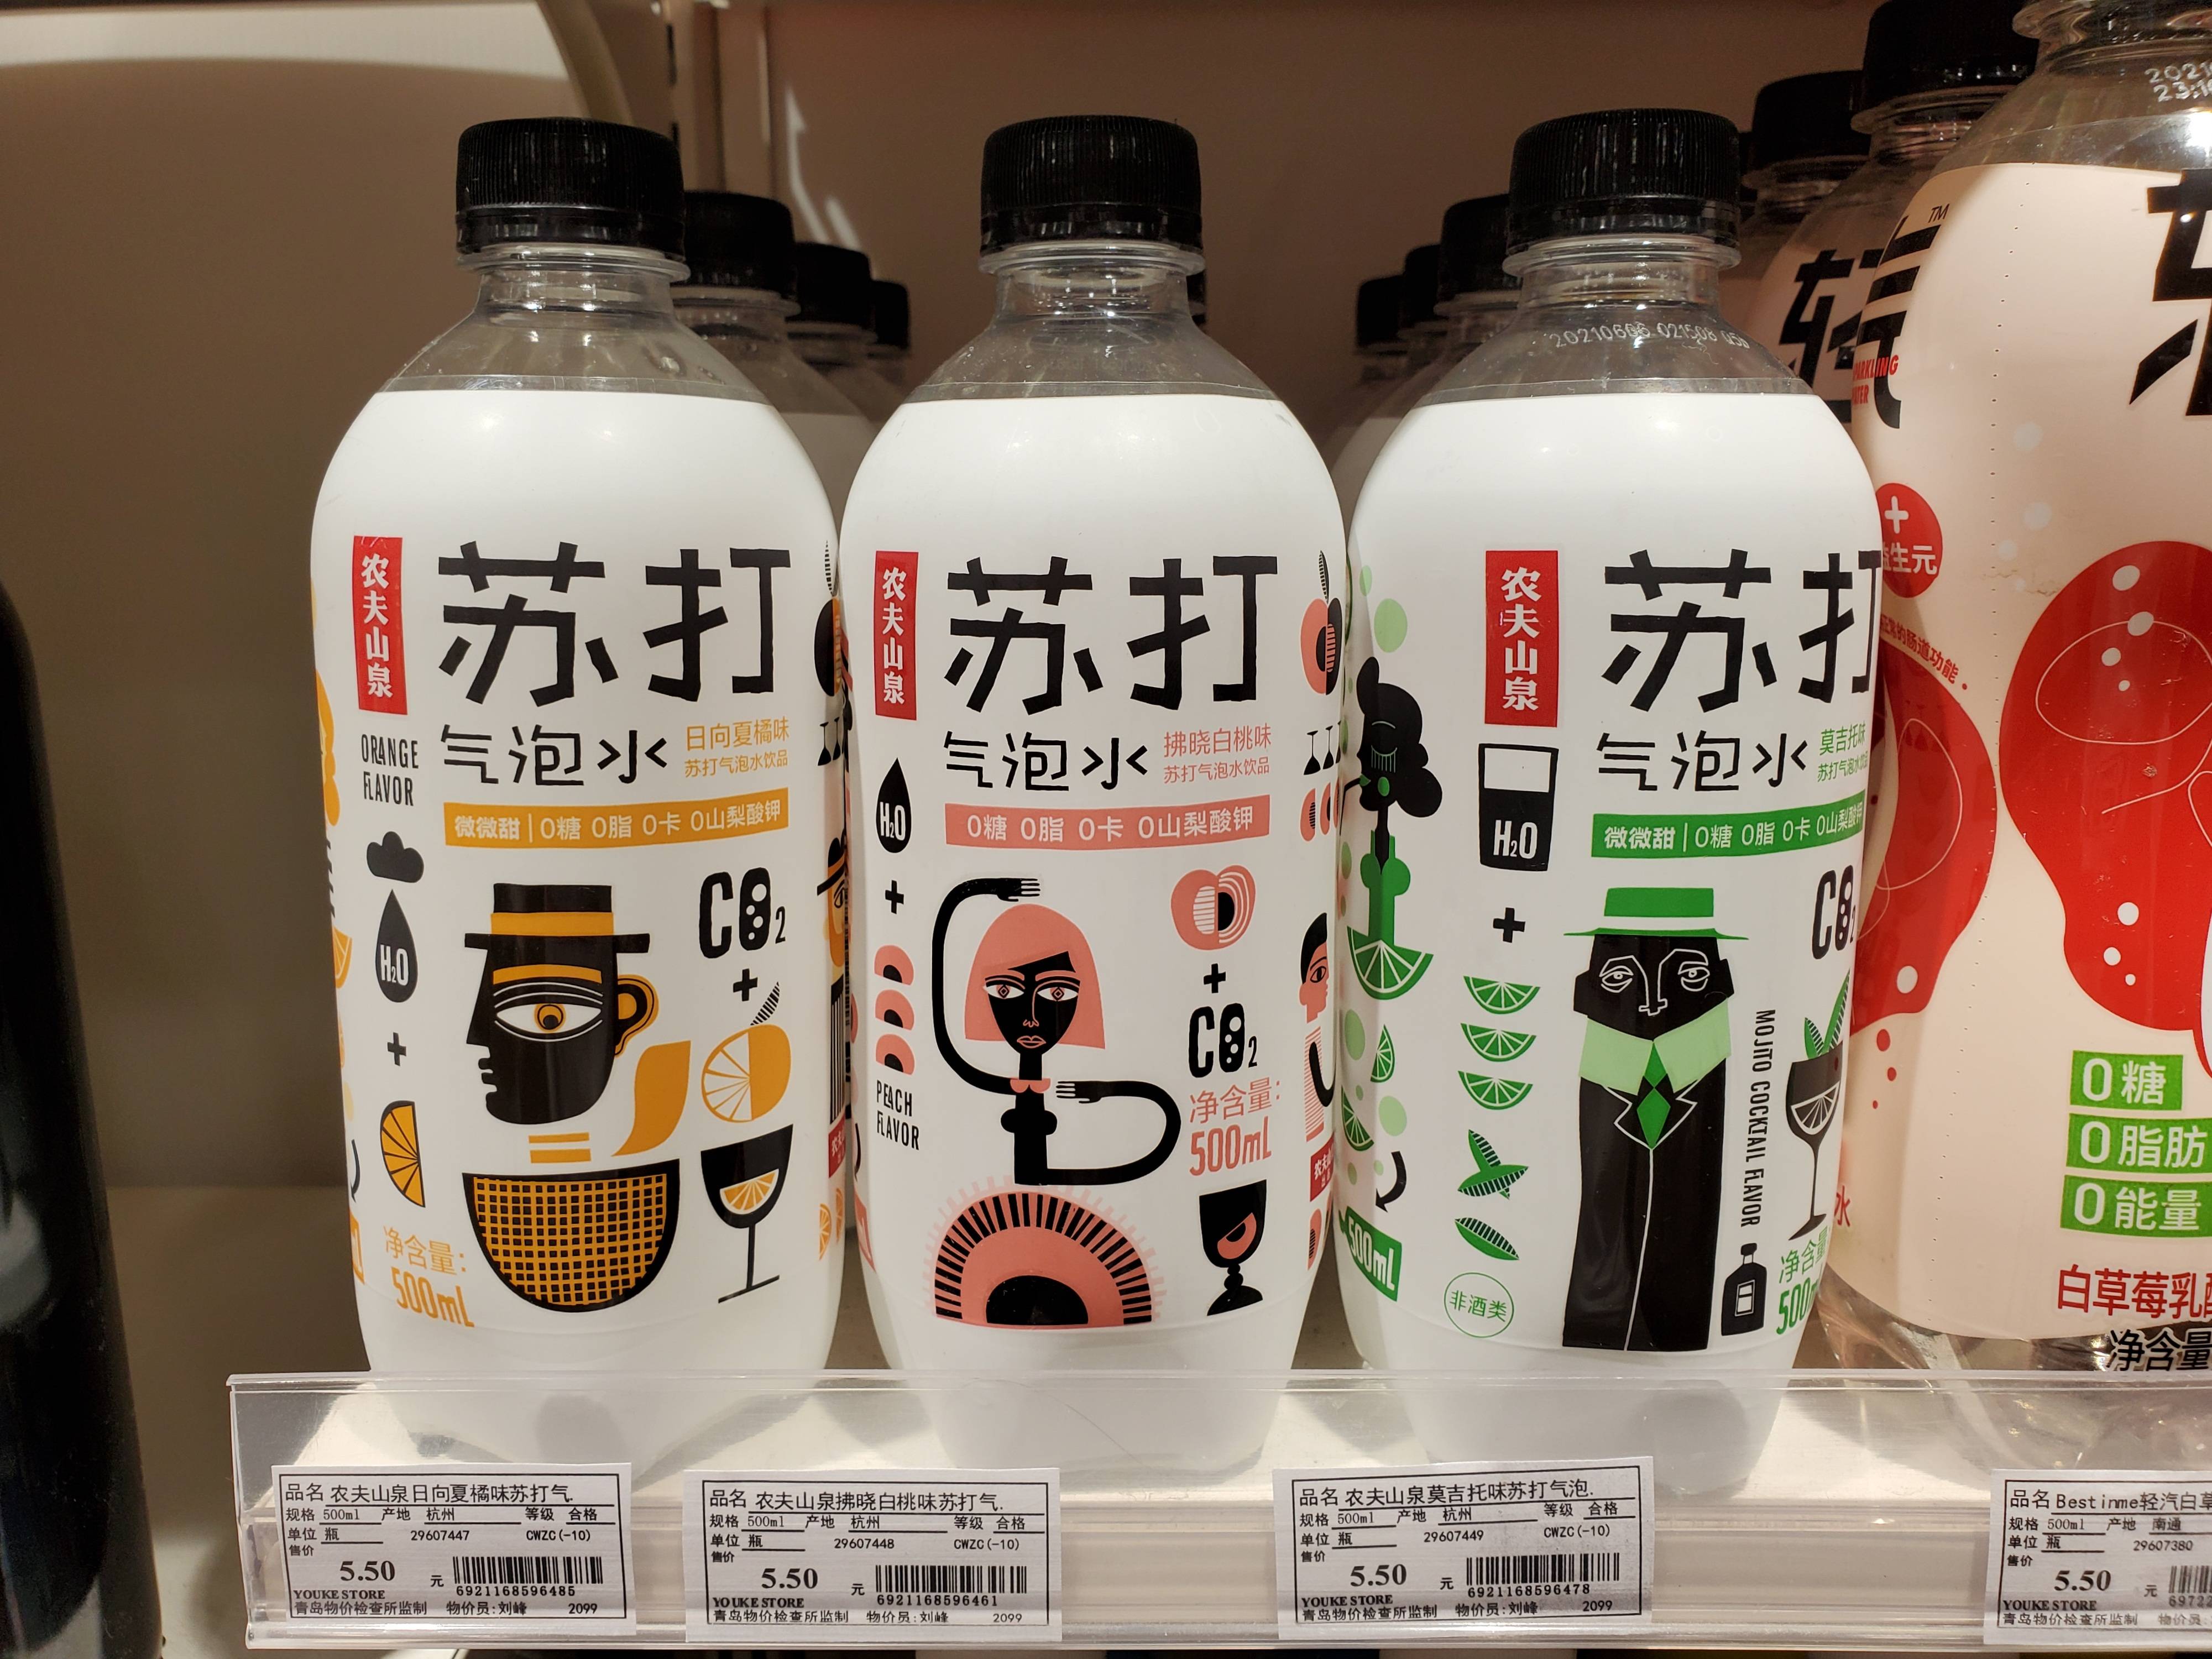 农夫山泉一款苏打气泡水因在宣传时使用拂晓白桃产自日本福岛县等